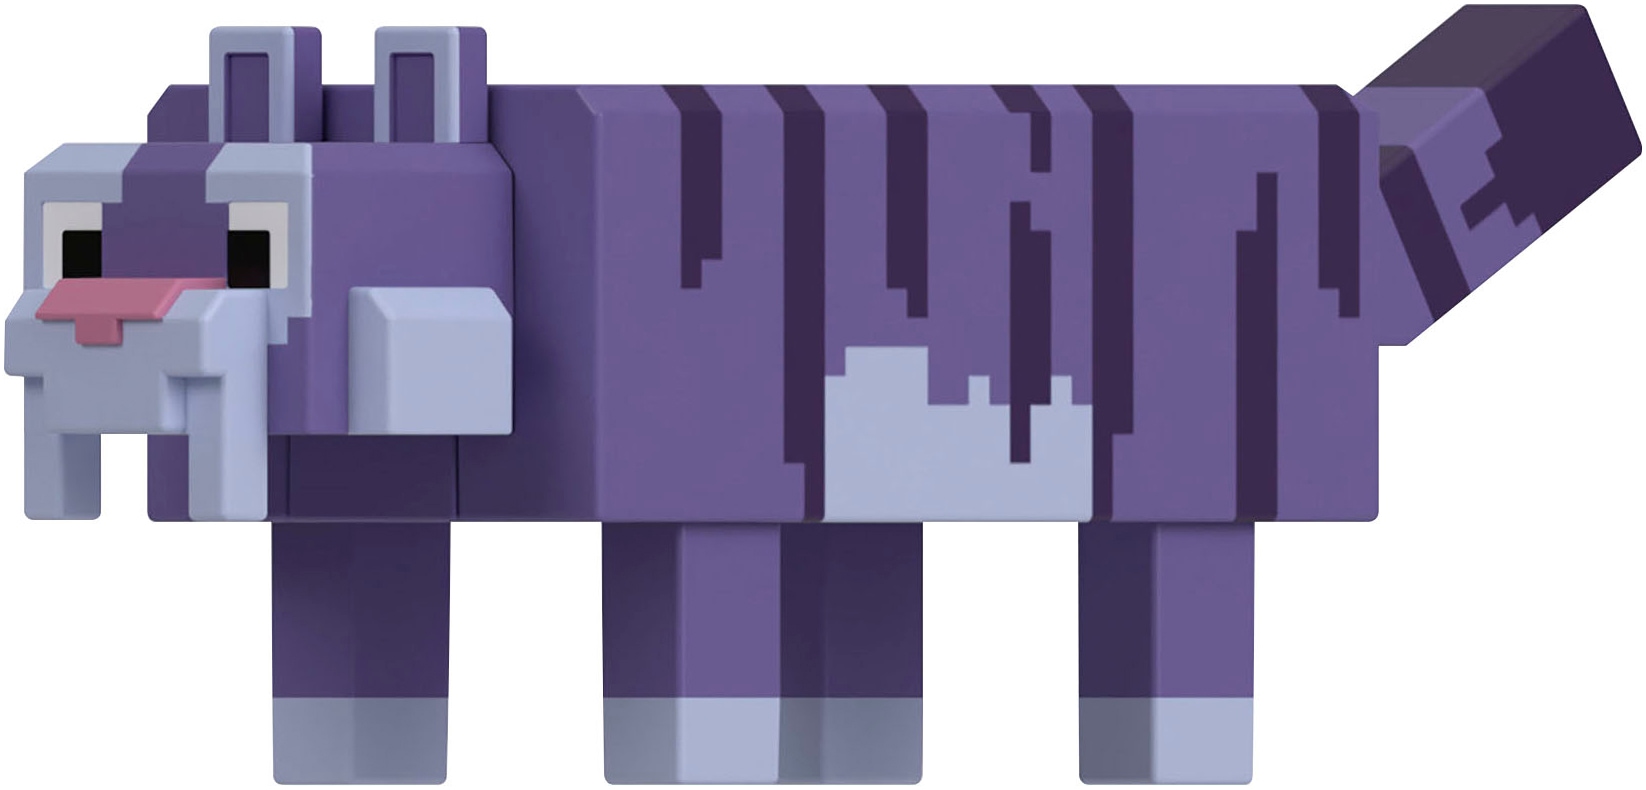 Mattel® Actionfigur »Minecraft Legends, Regal Tiger«, mit Funktion